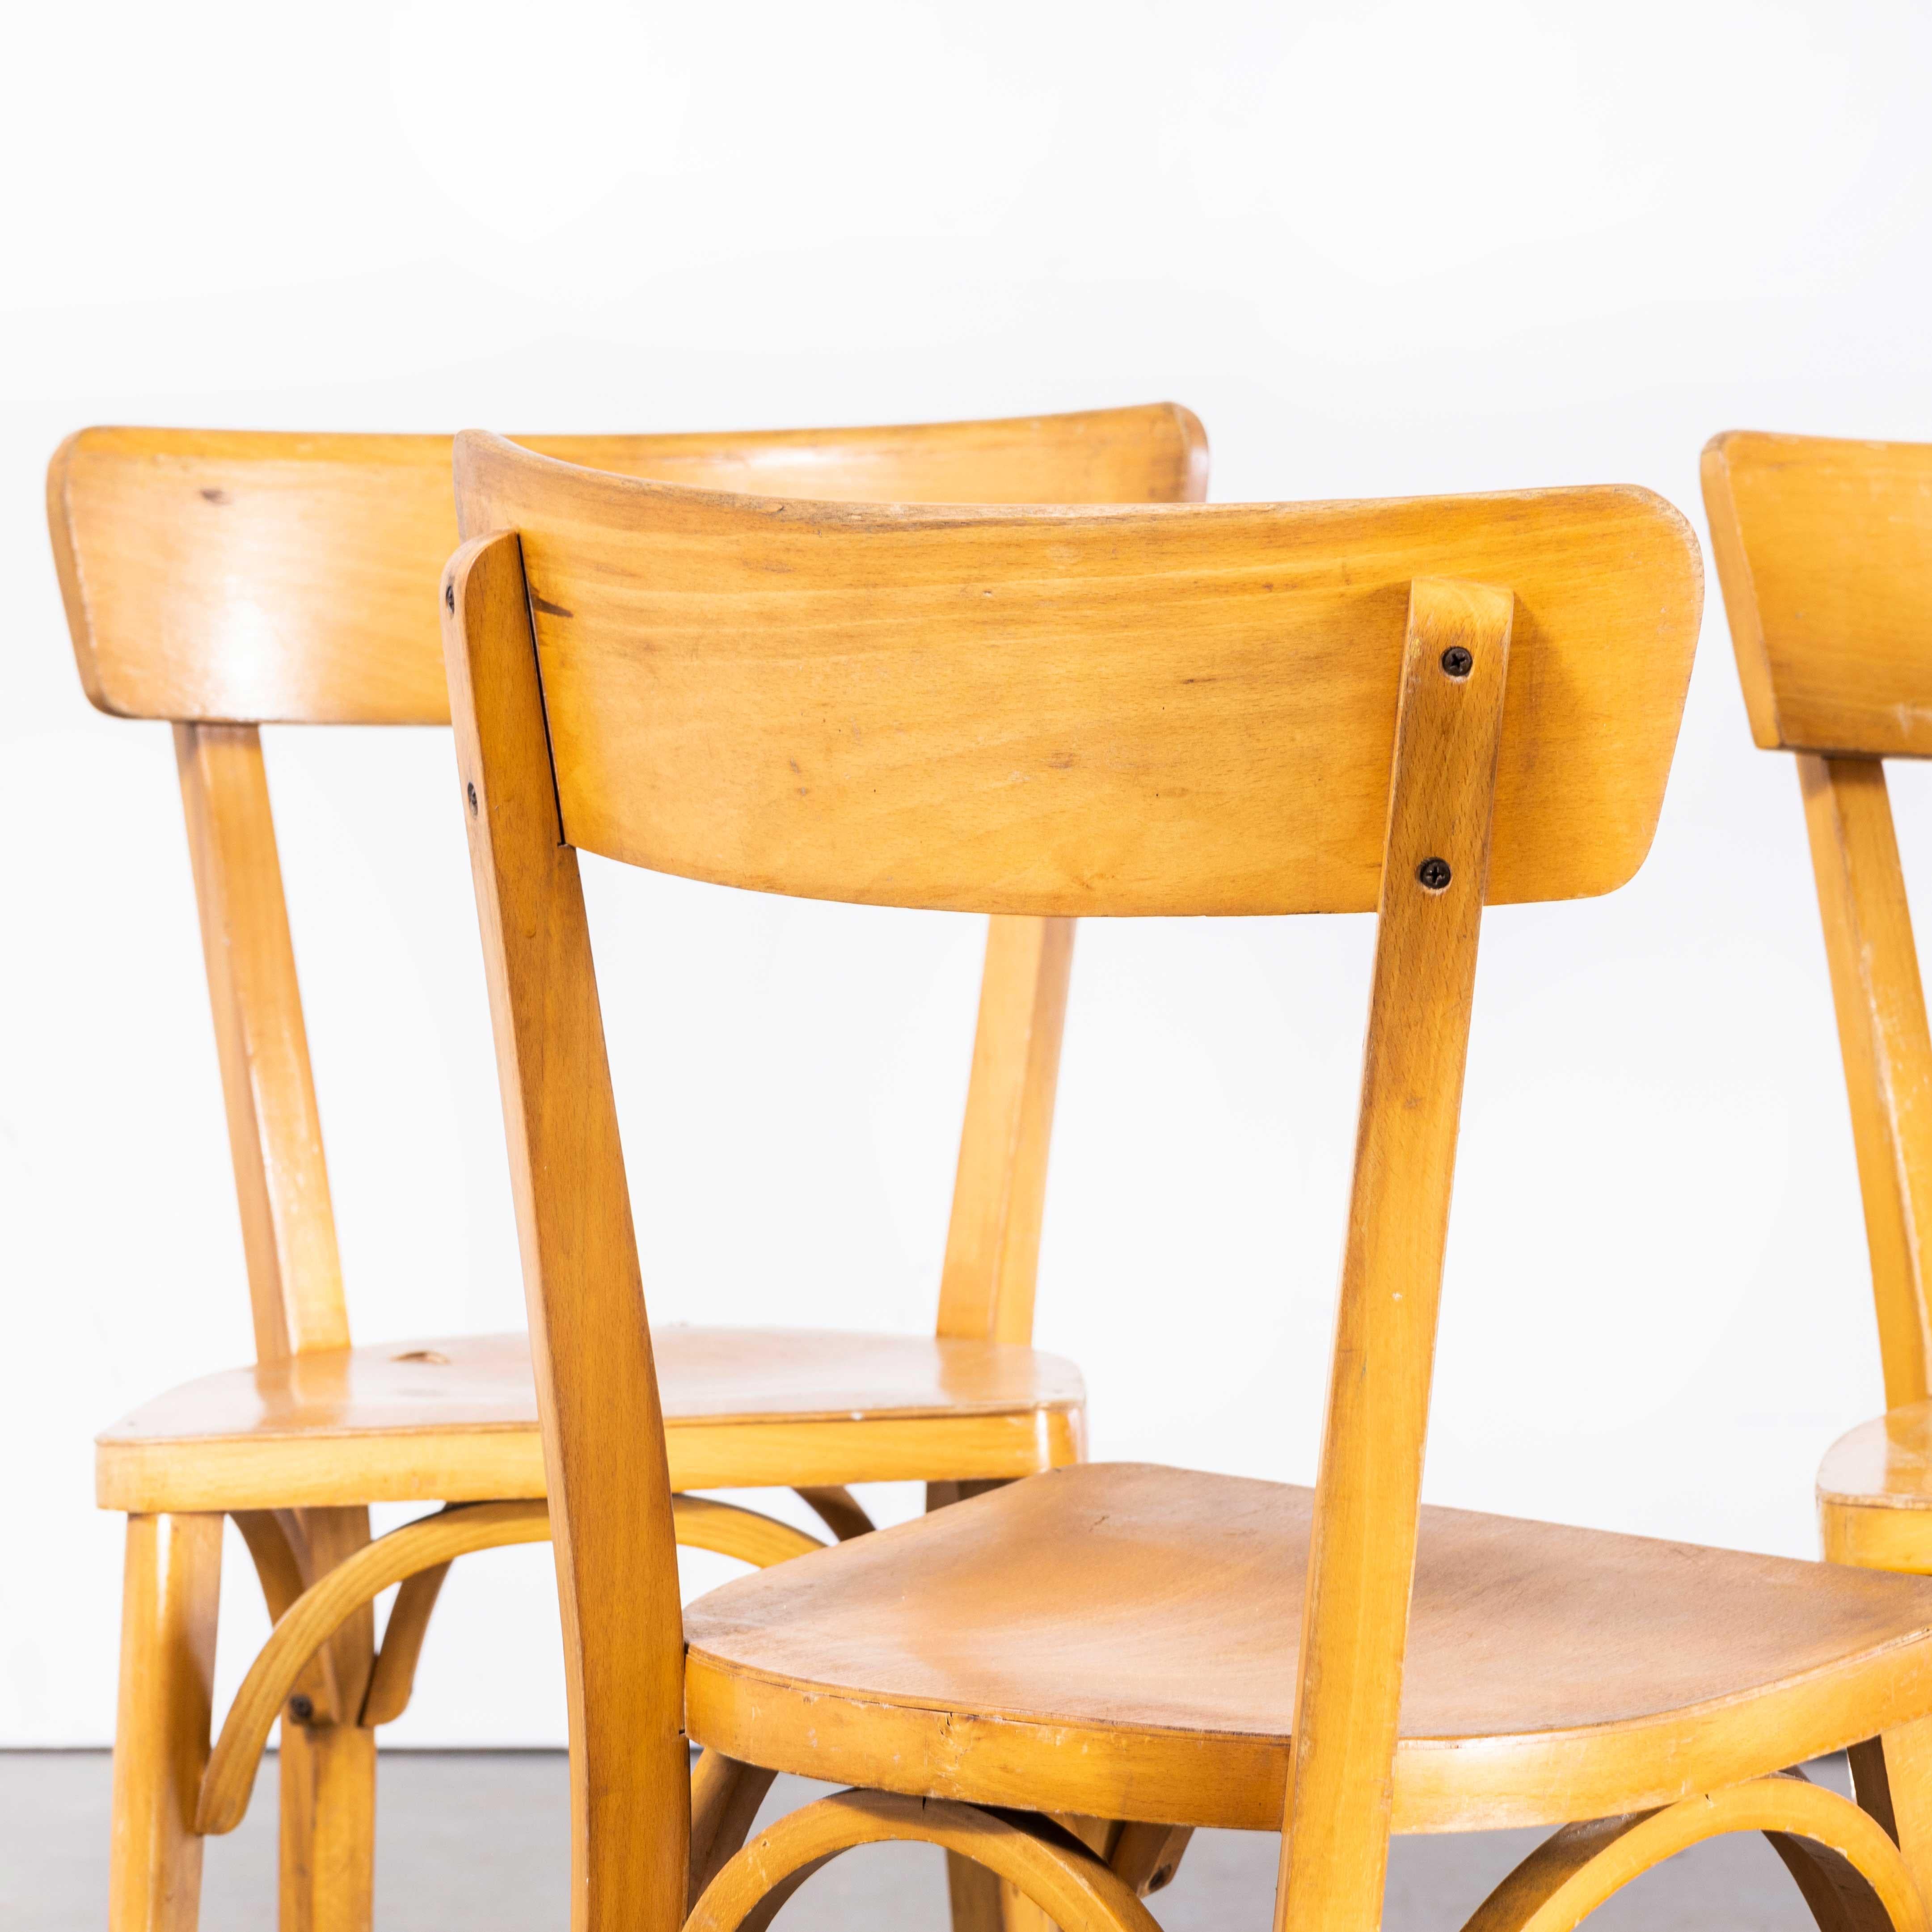 Chaises de salle à manger Baumann en hêtre blond des années 1950 - Disponibles en différentes quantités
Chaises de salle à manger en hêtre blond Baumann des années 1950 - Différentes quantités disponibles. Baumann est un producteur français un peu